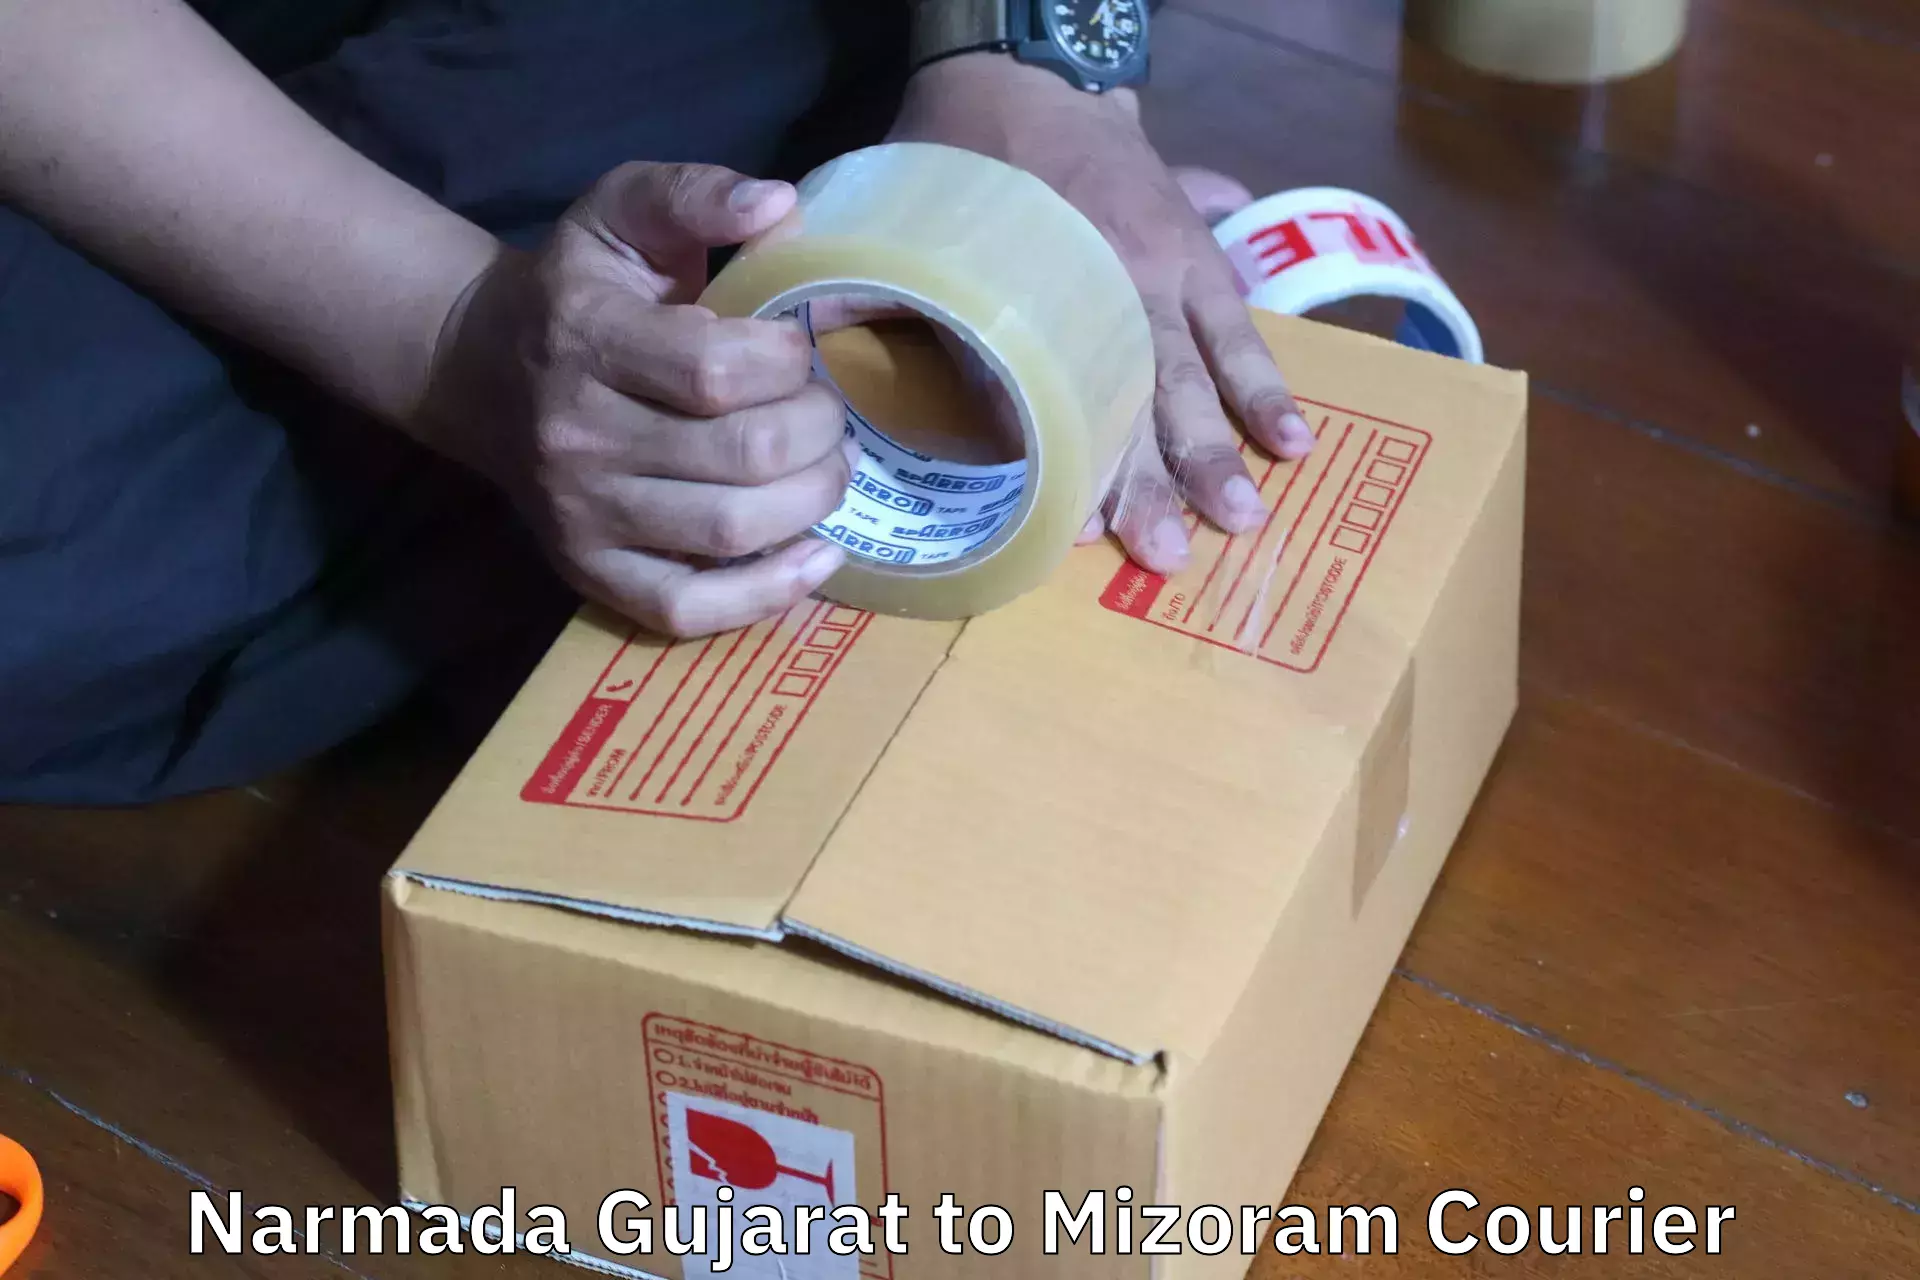 Specialized moving company Narmada Gujarat to Mizoram